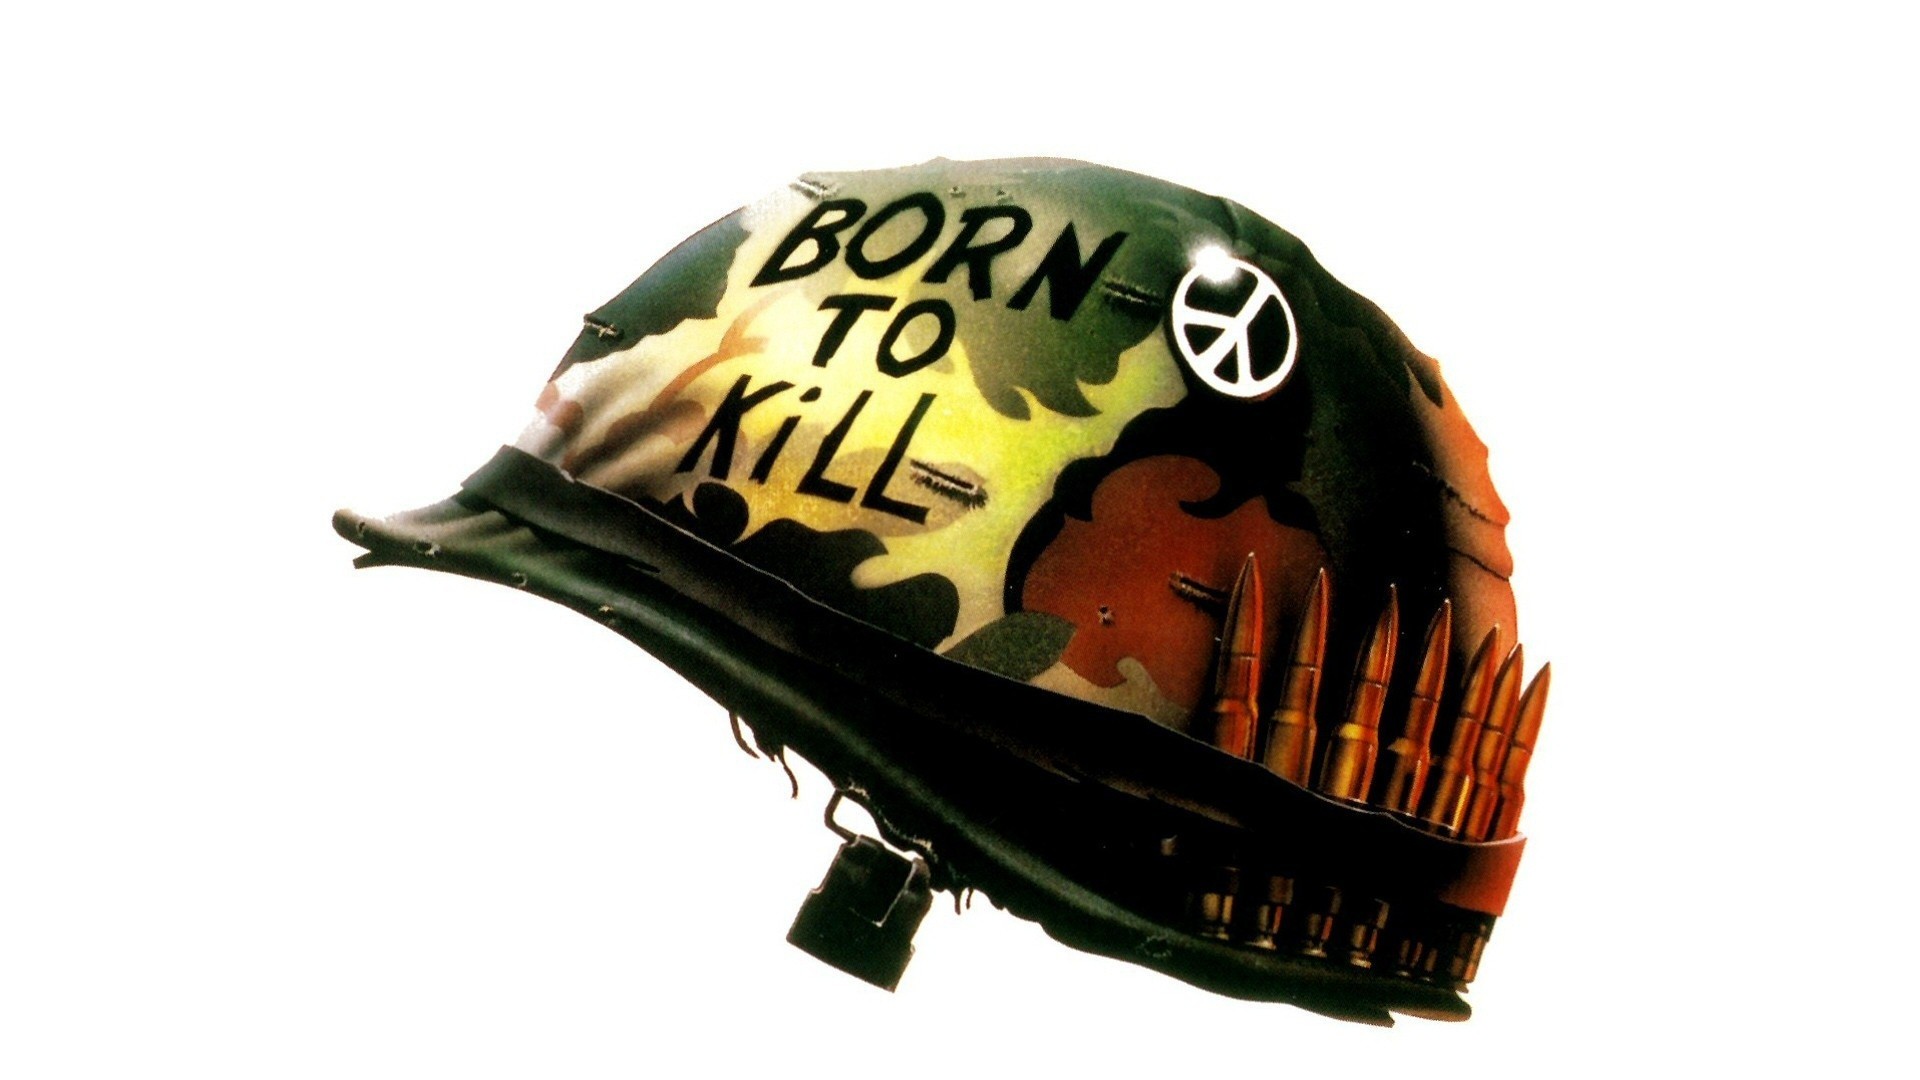 General 1920x1080 Full Metal Jacket movies peace helmet simple background movie poster Stanley Kubrick